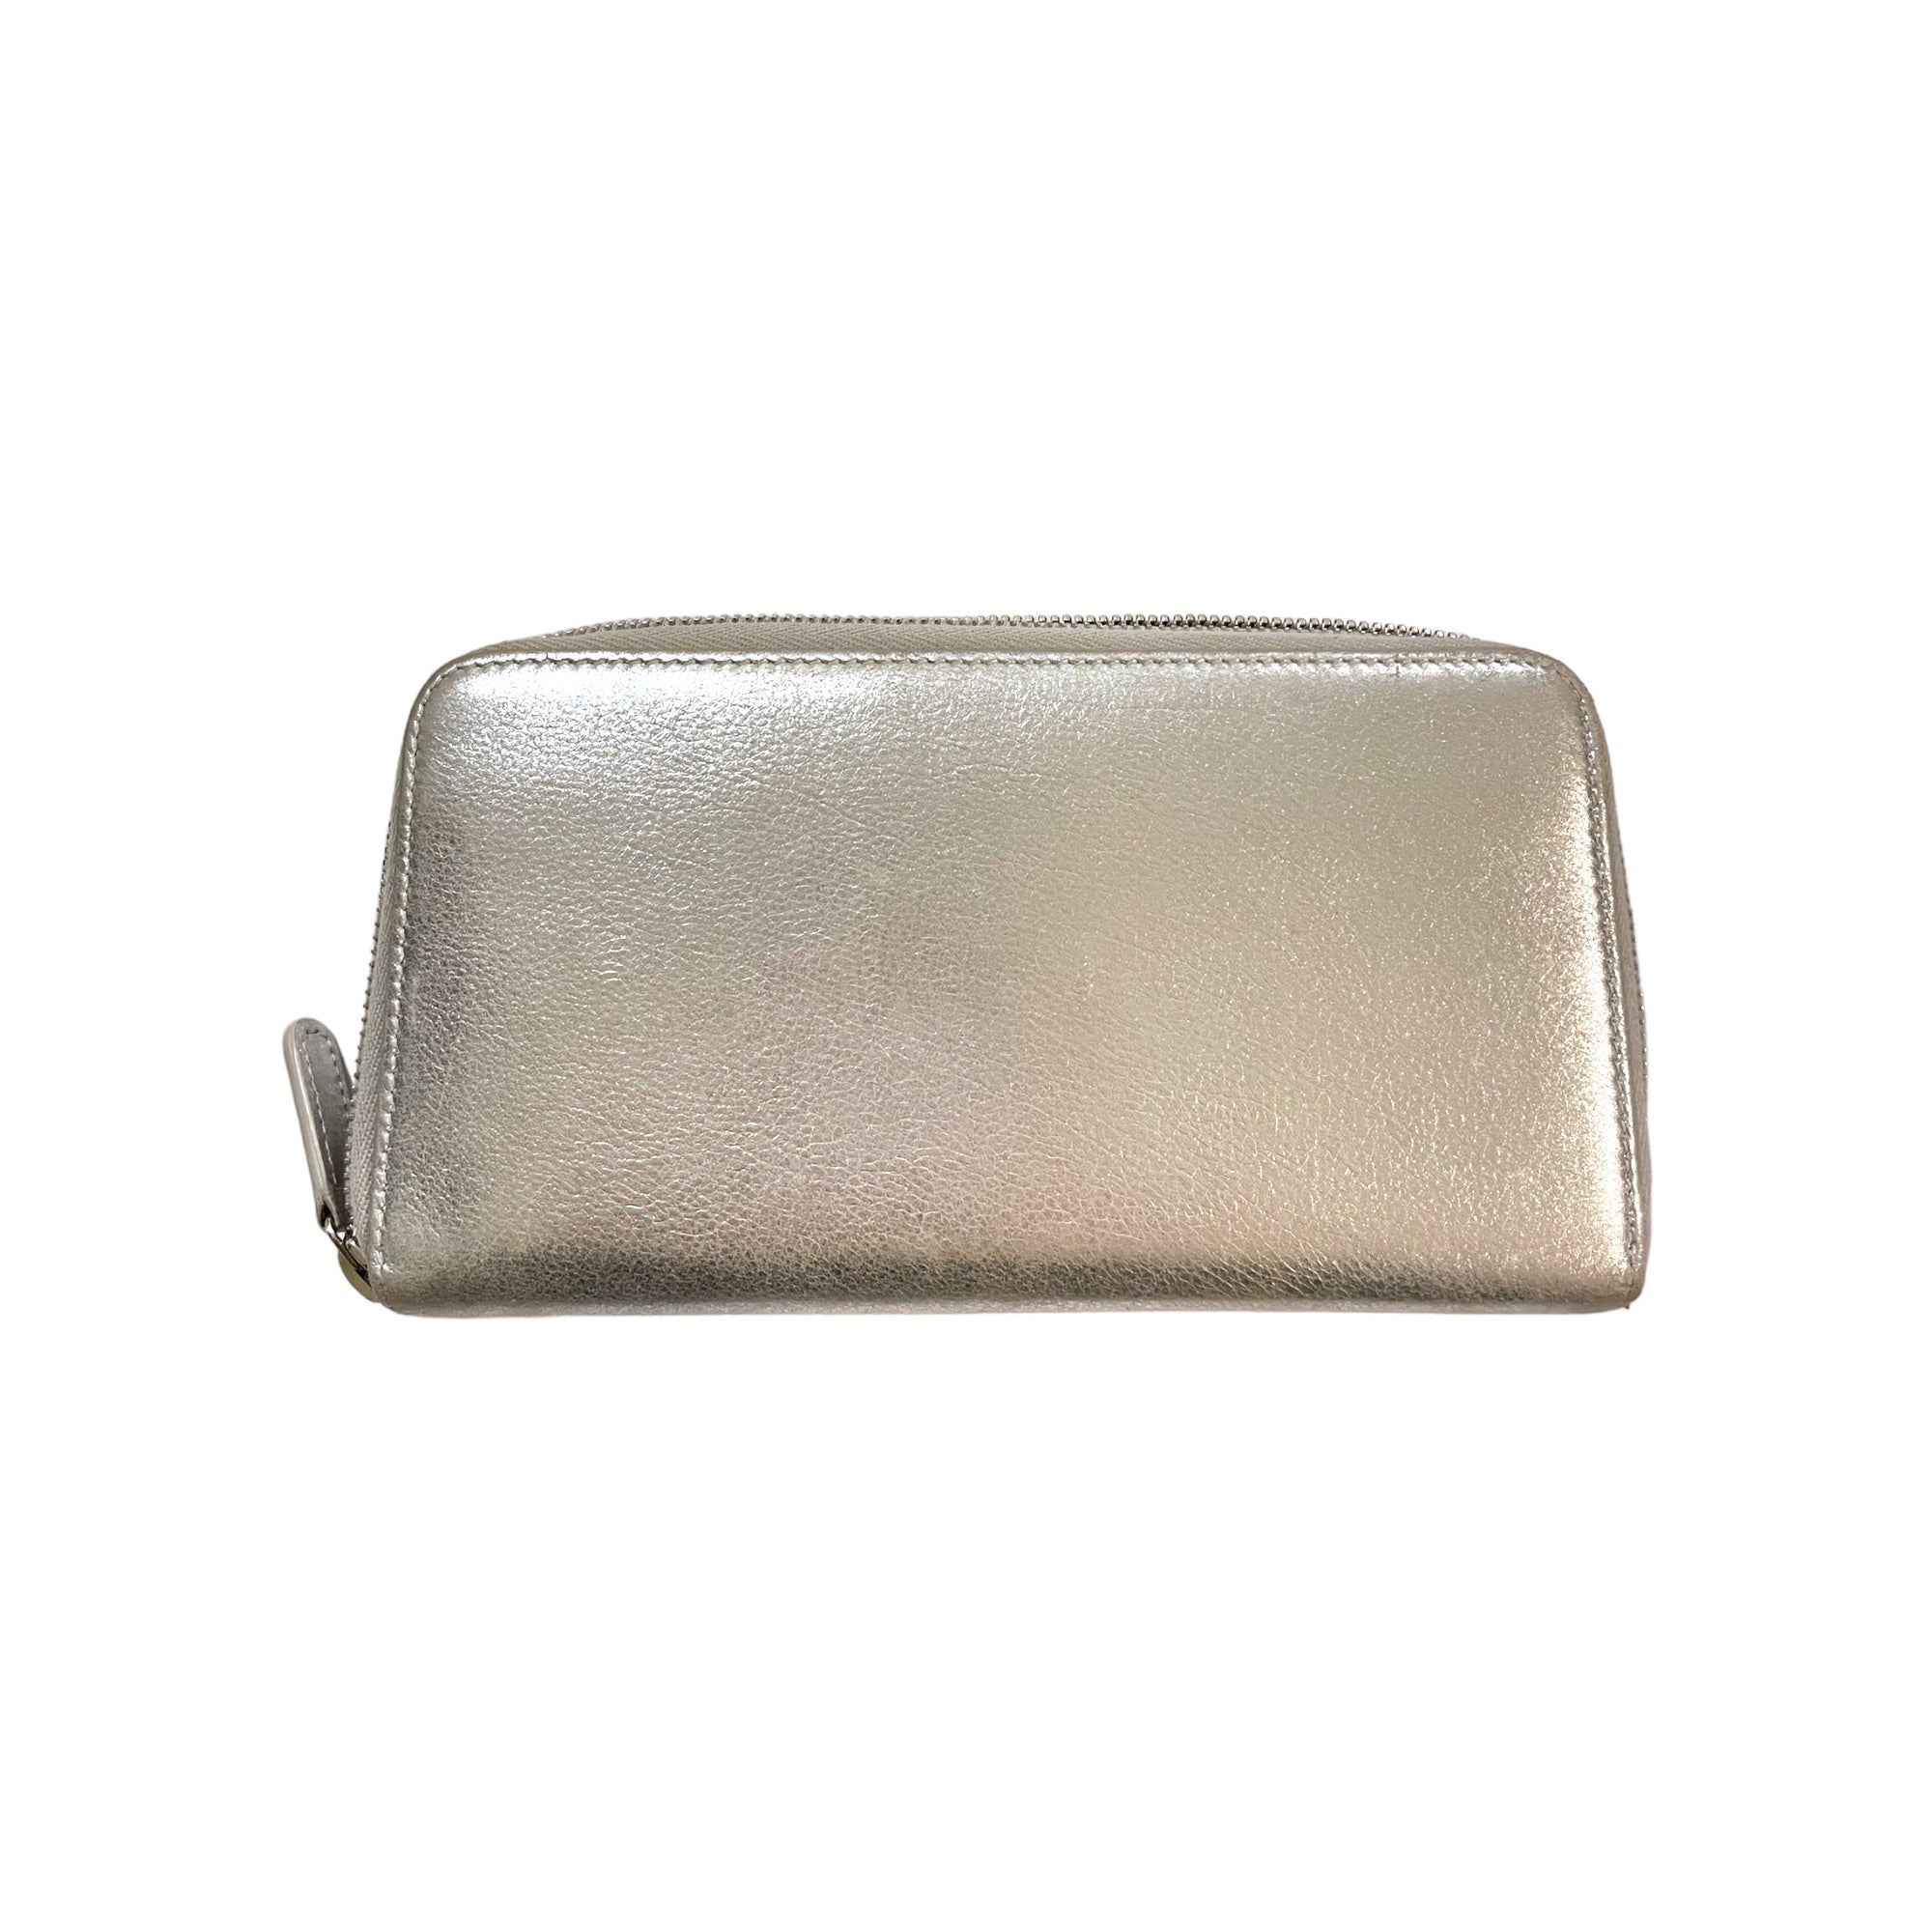 CHANEL Metallic Silver Lambskin Leather Wallet Long Zip Wallet